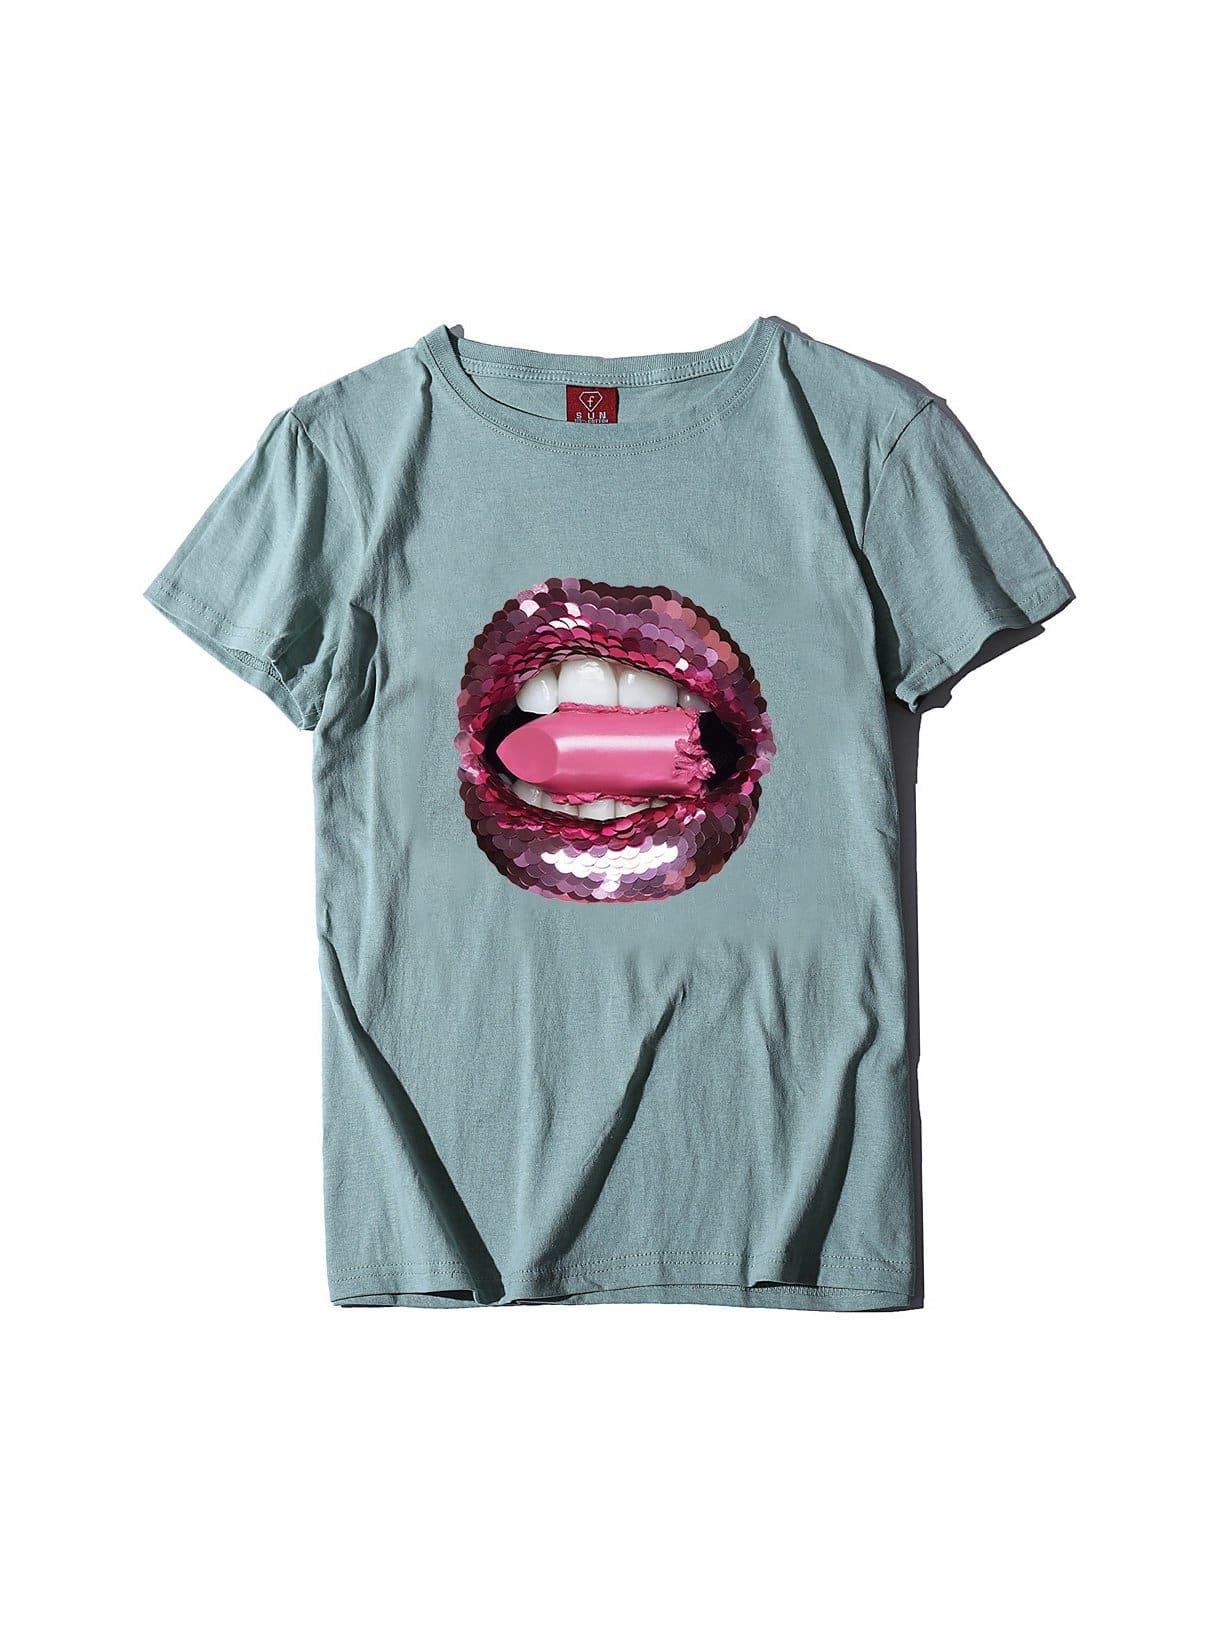 lovevop Versatile Lips Printing T-Shirt For Women Summer